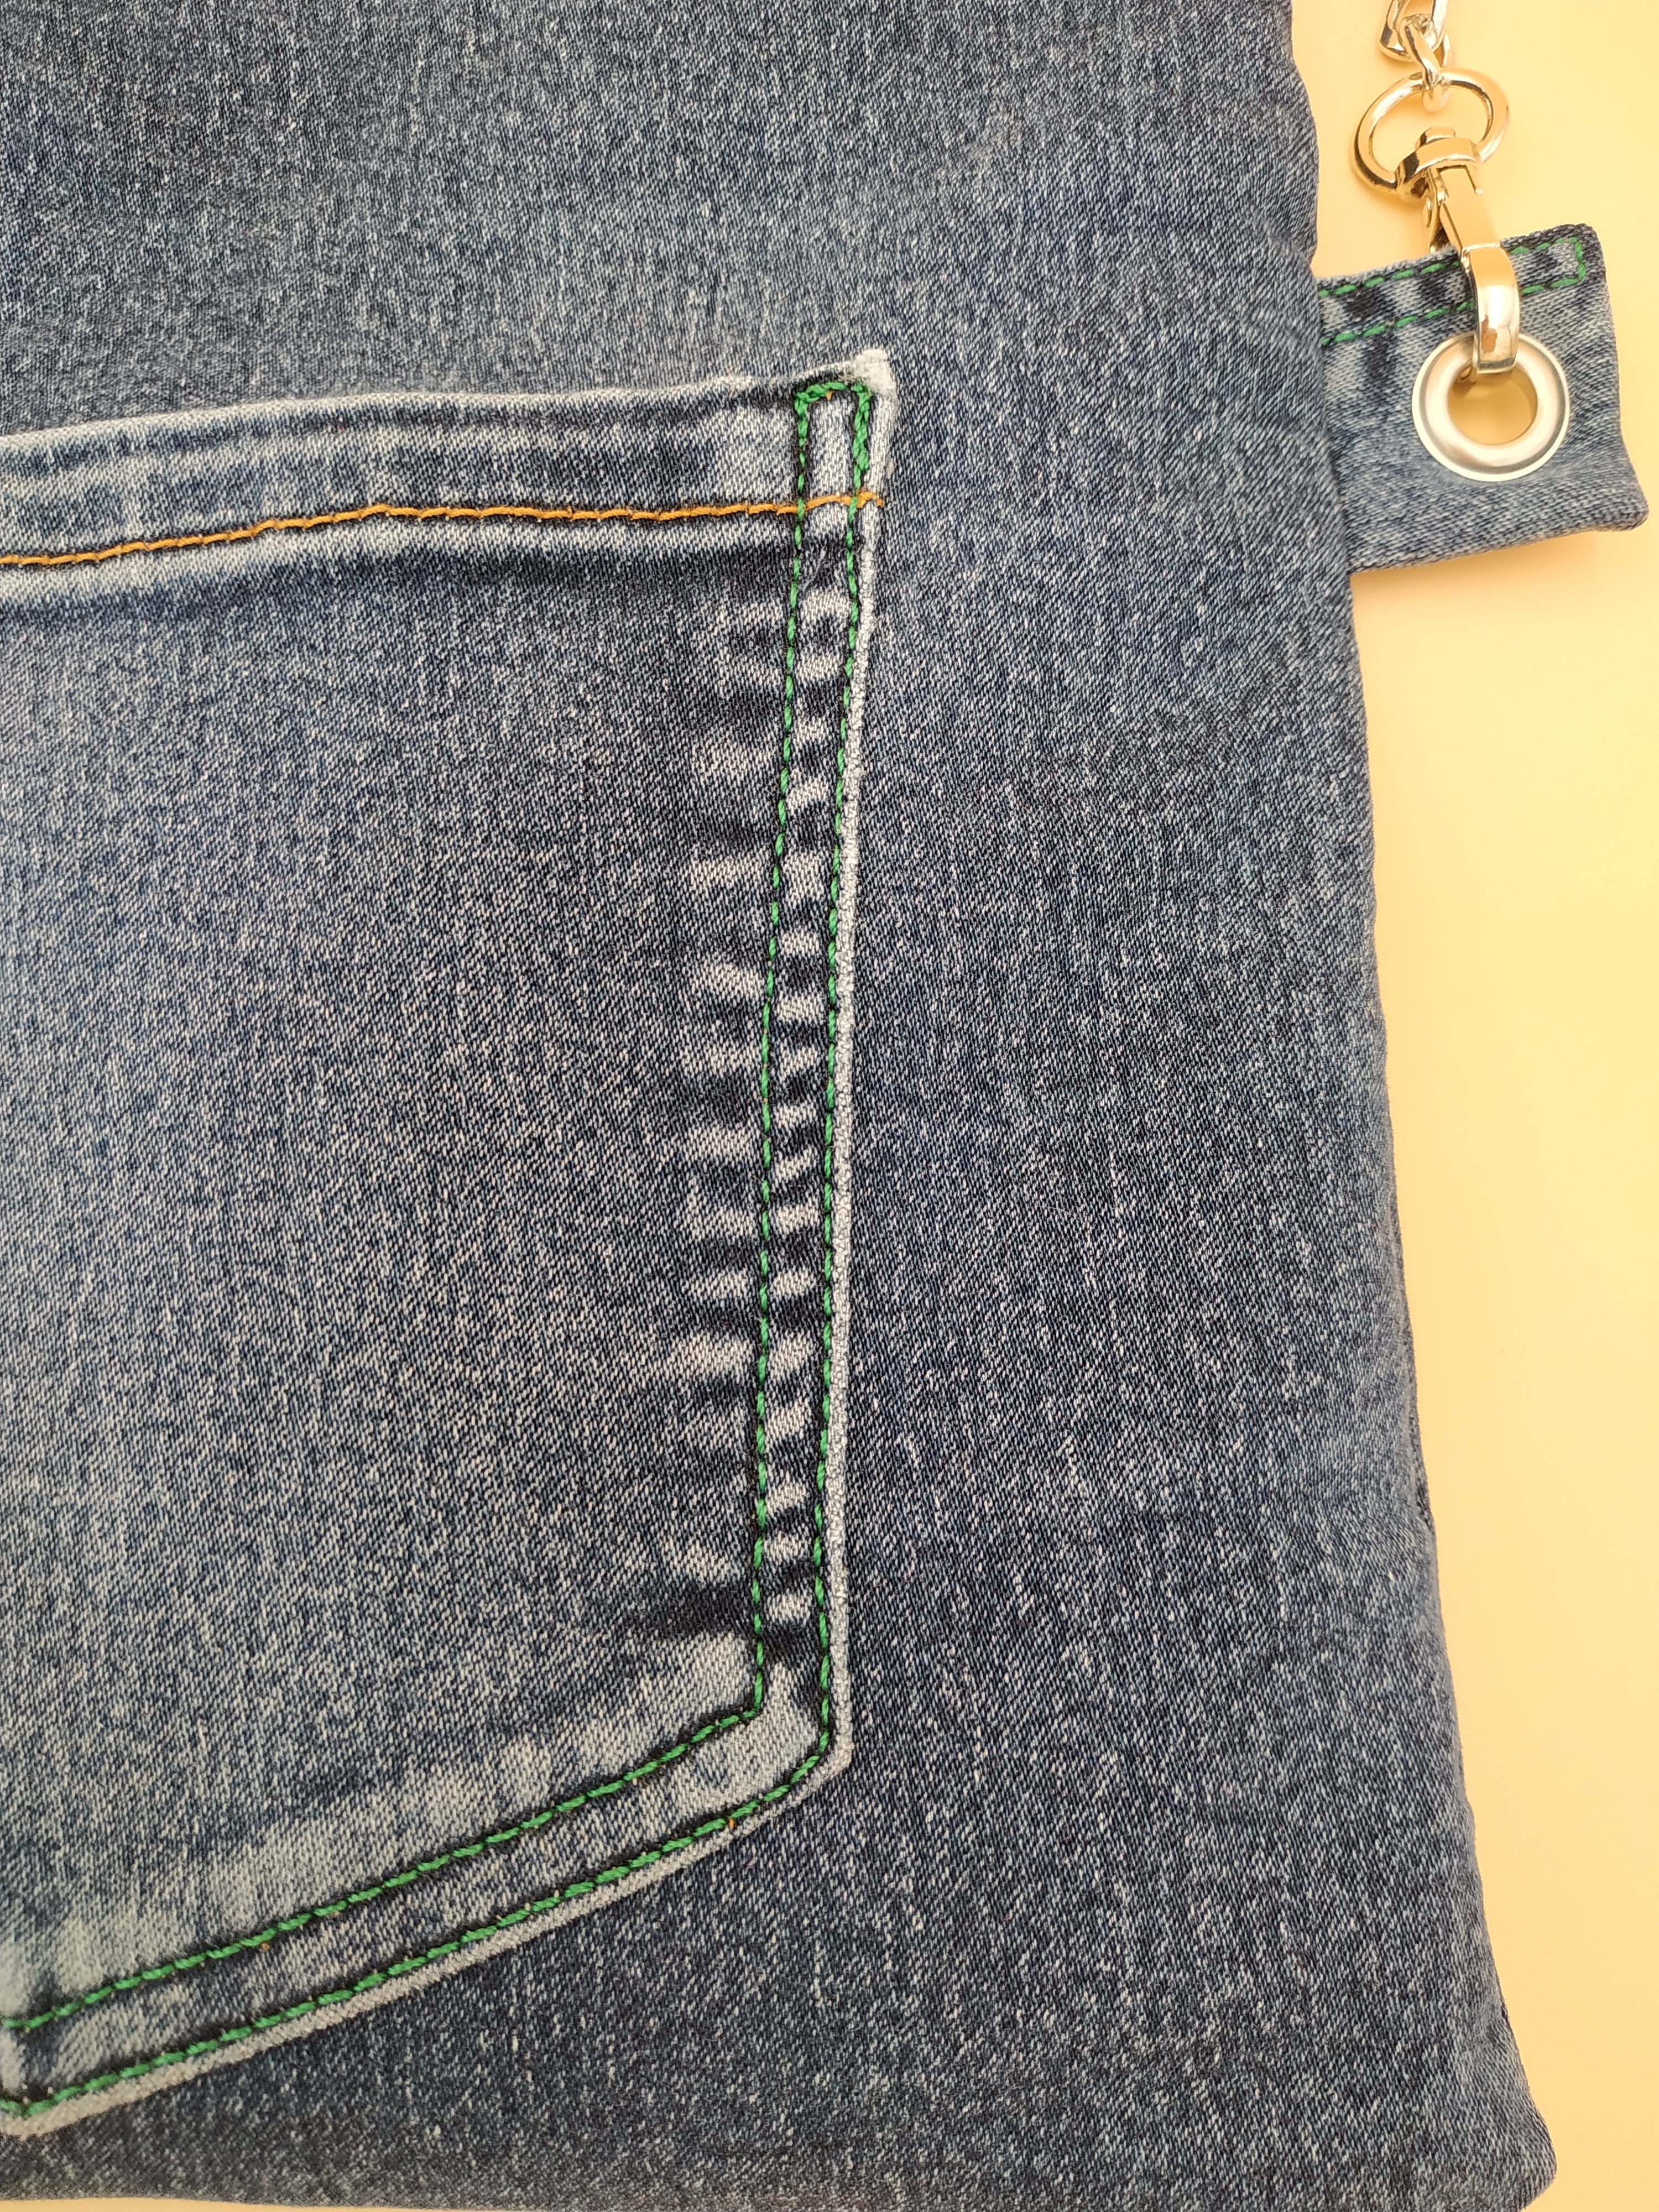 pochette repliée en jean recyclé : détail poche et coutures